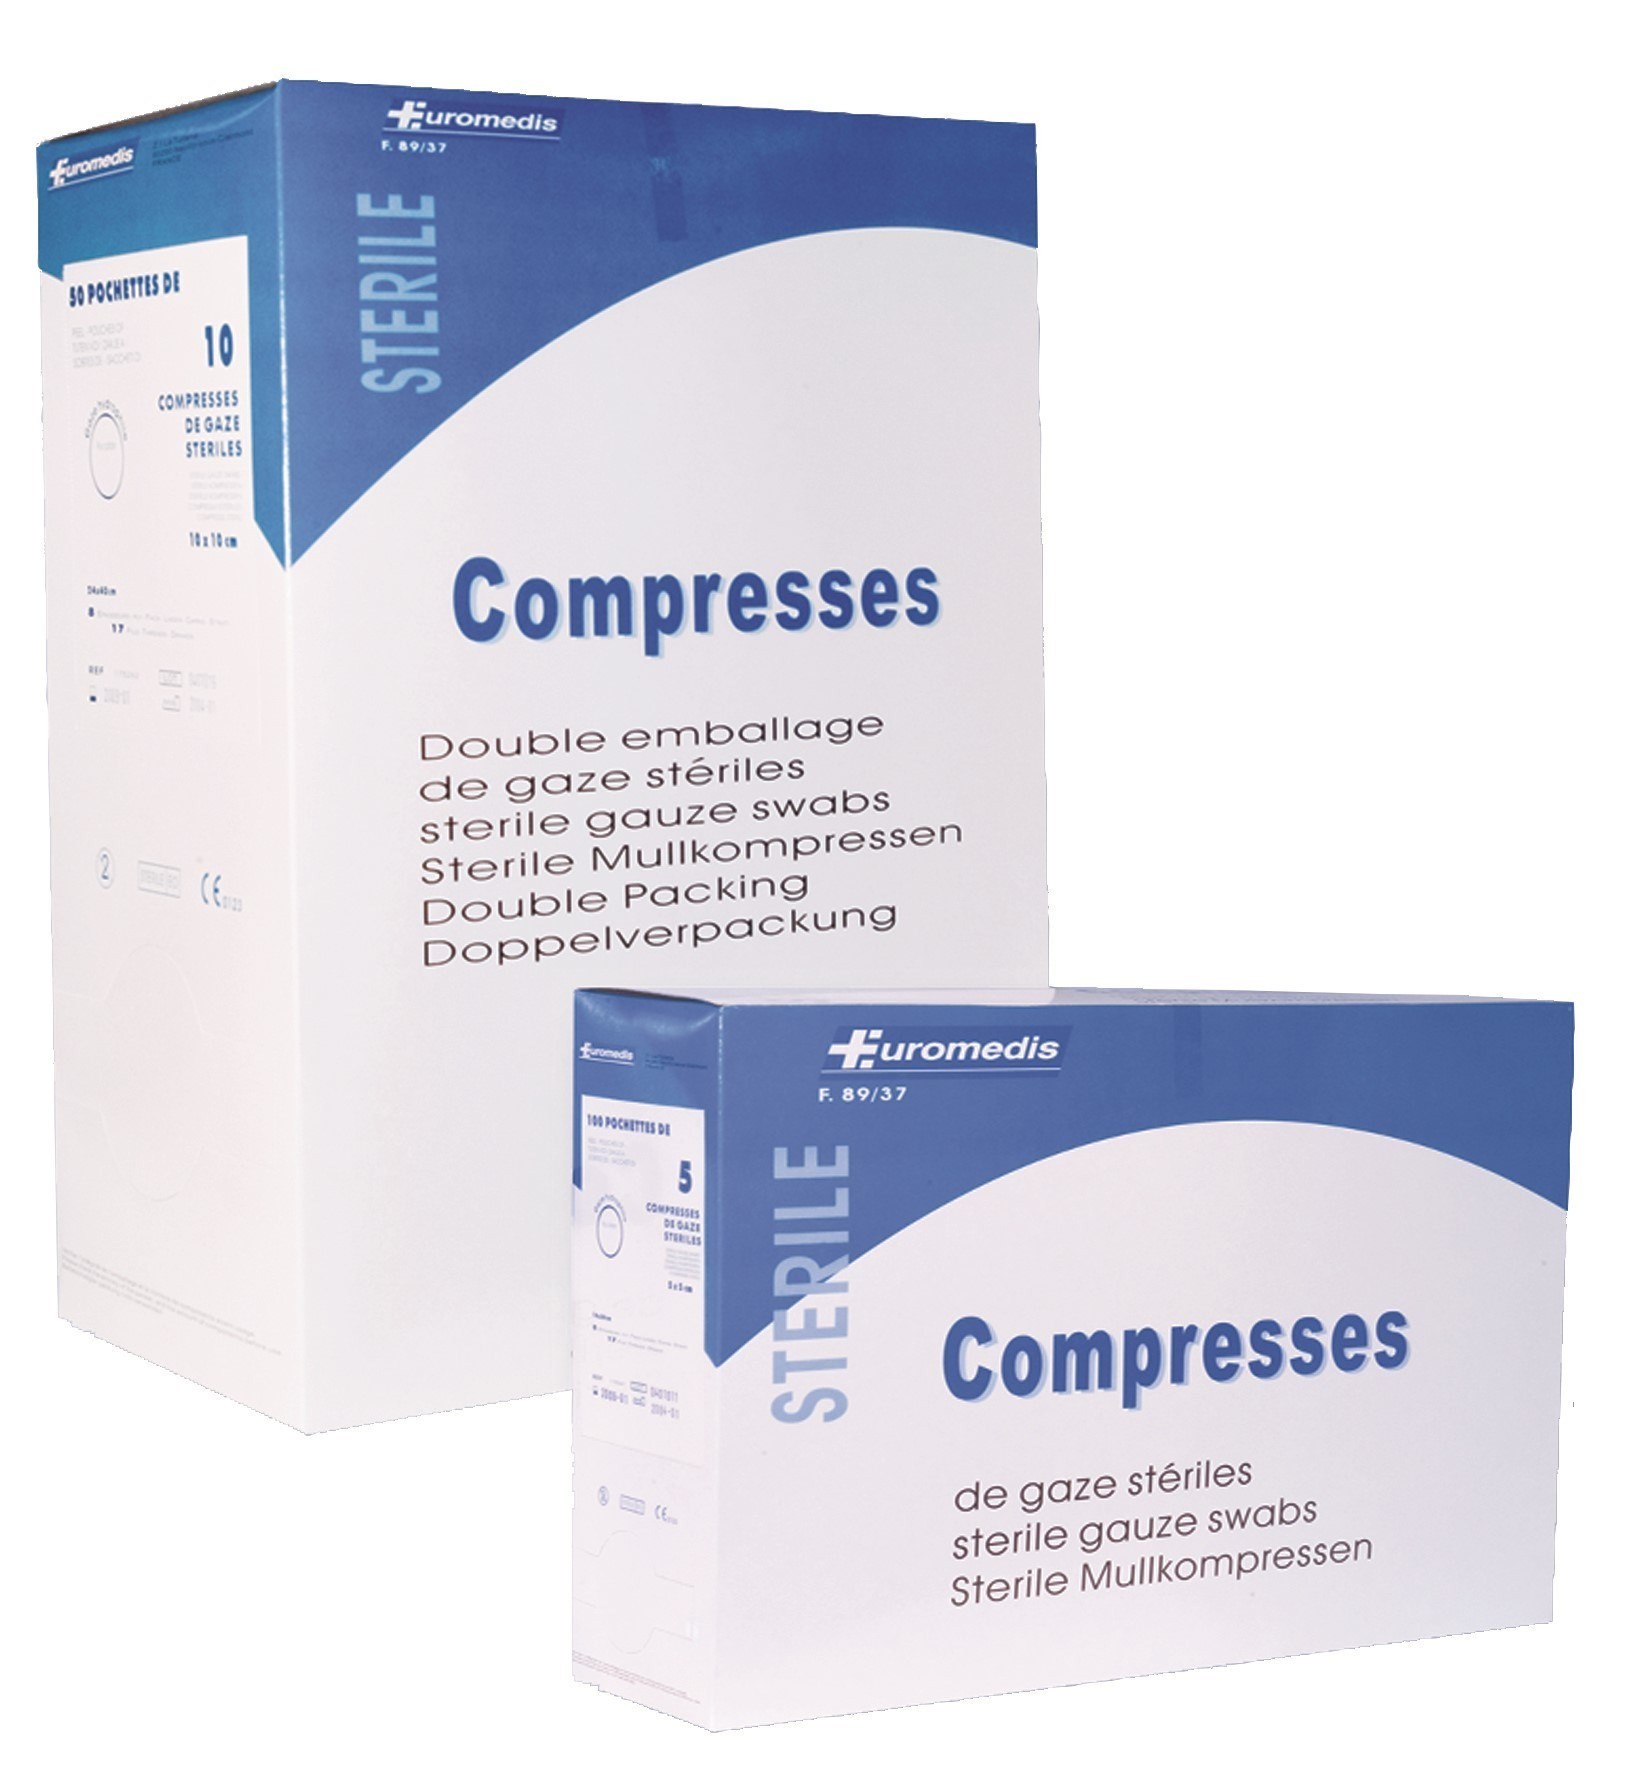 Compresses de gaze (Paquet de 100pcs en COVERMARK